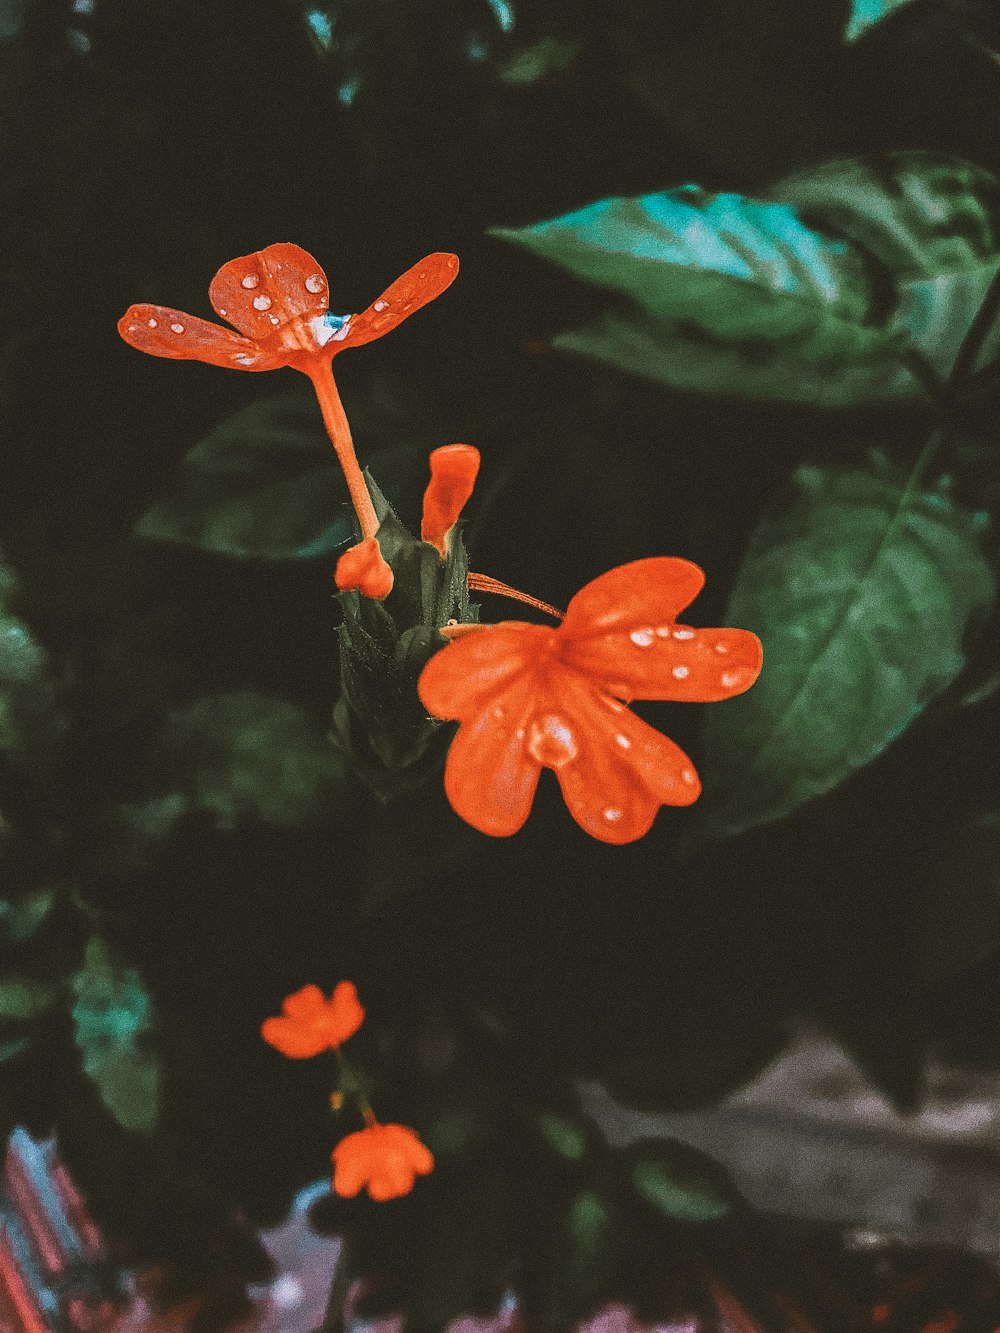 Flor roja de 5 pétalos en fotografía de primer plano